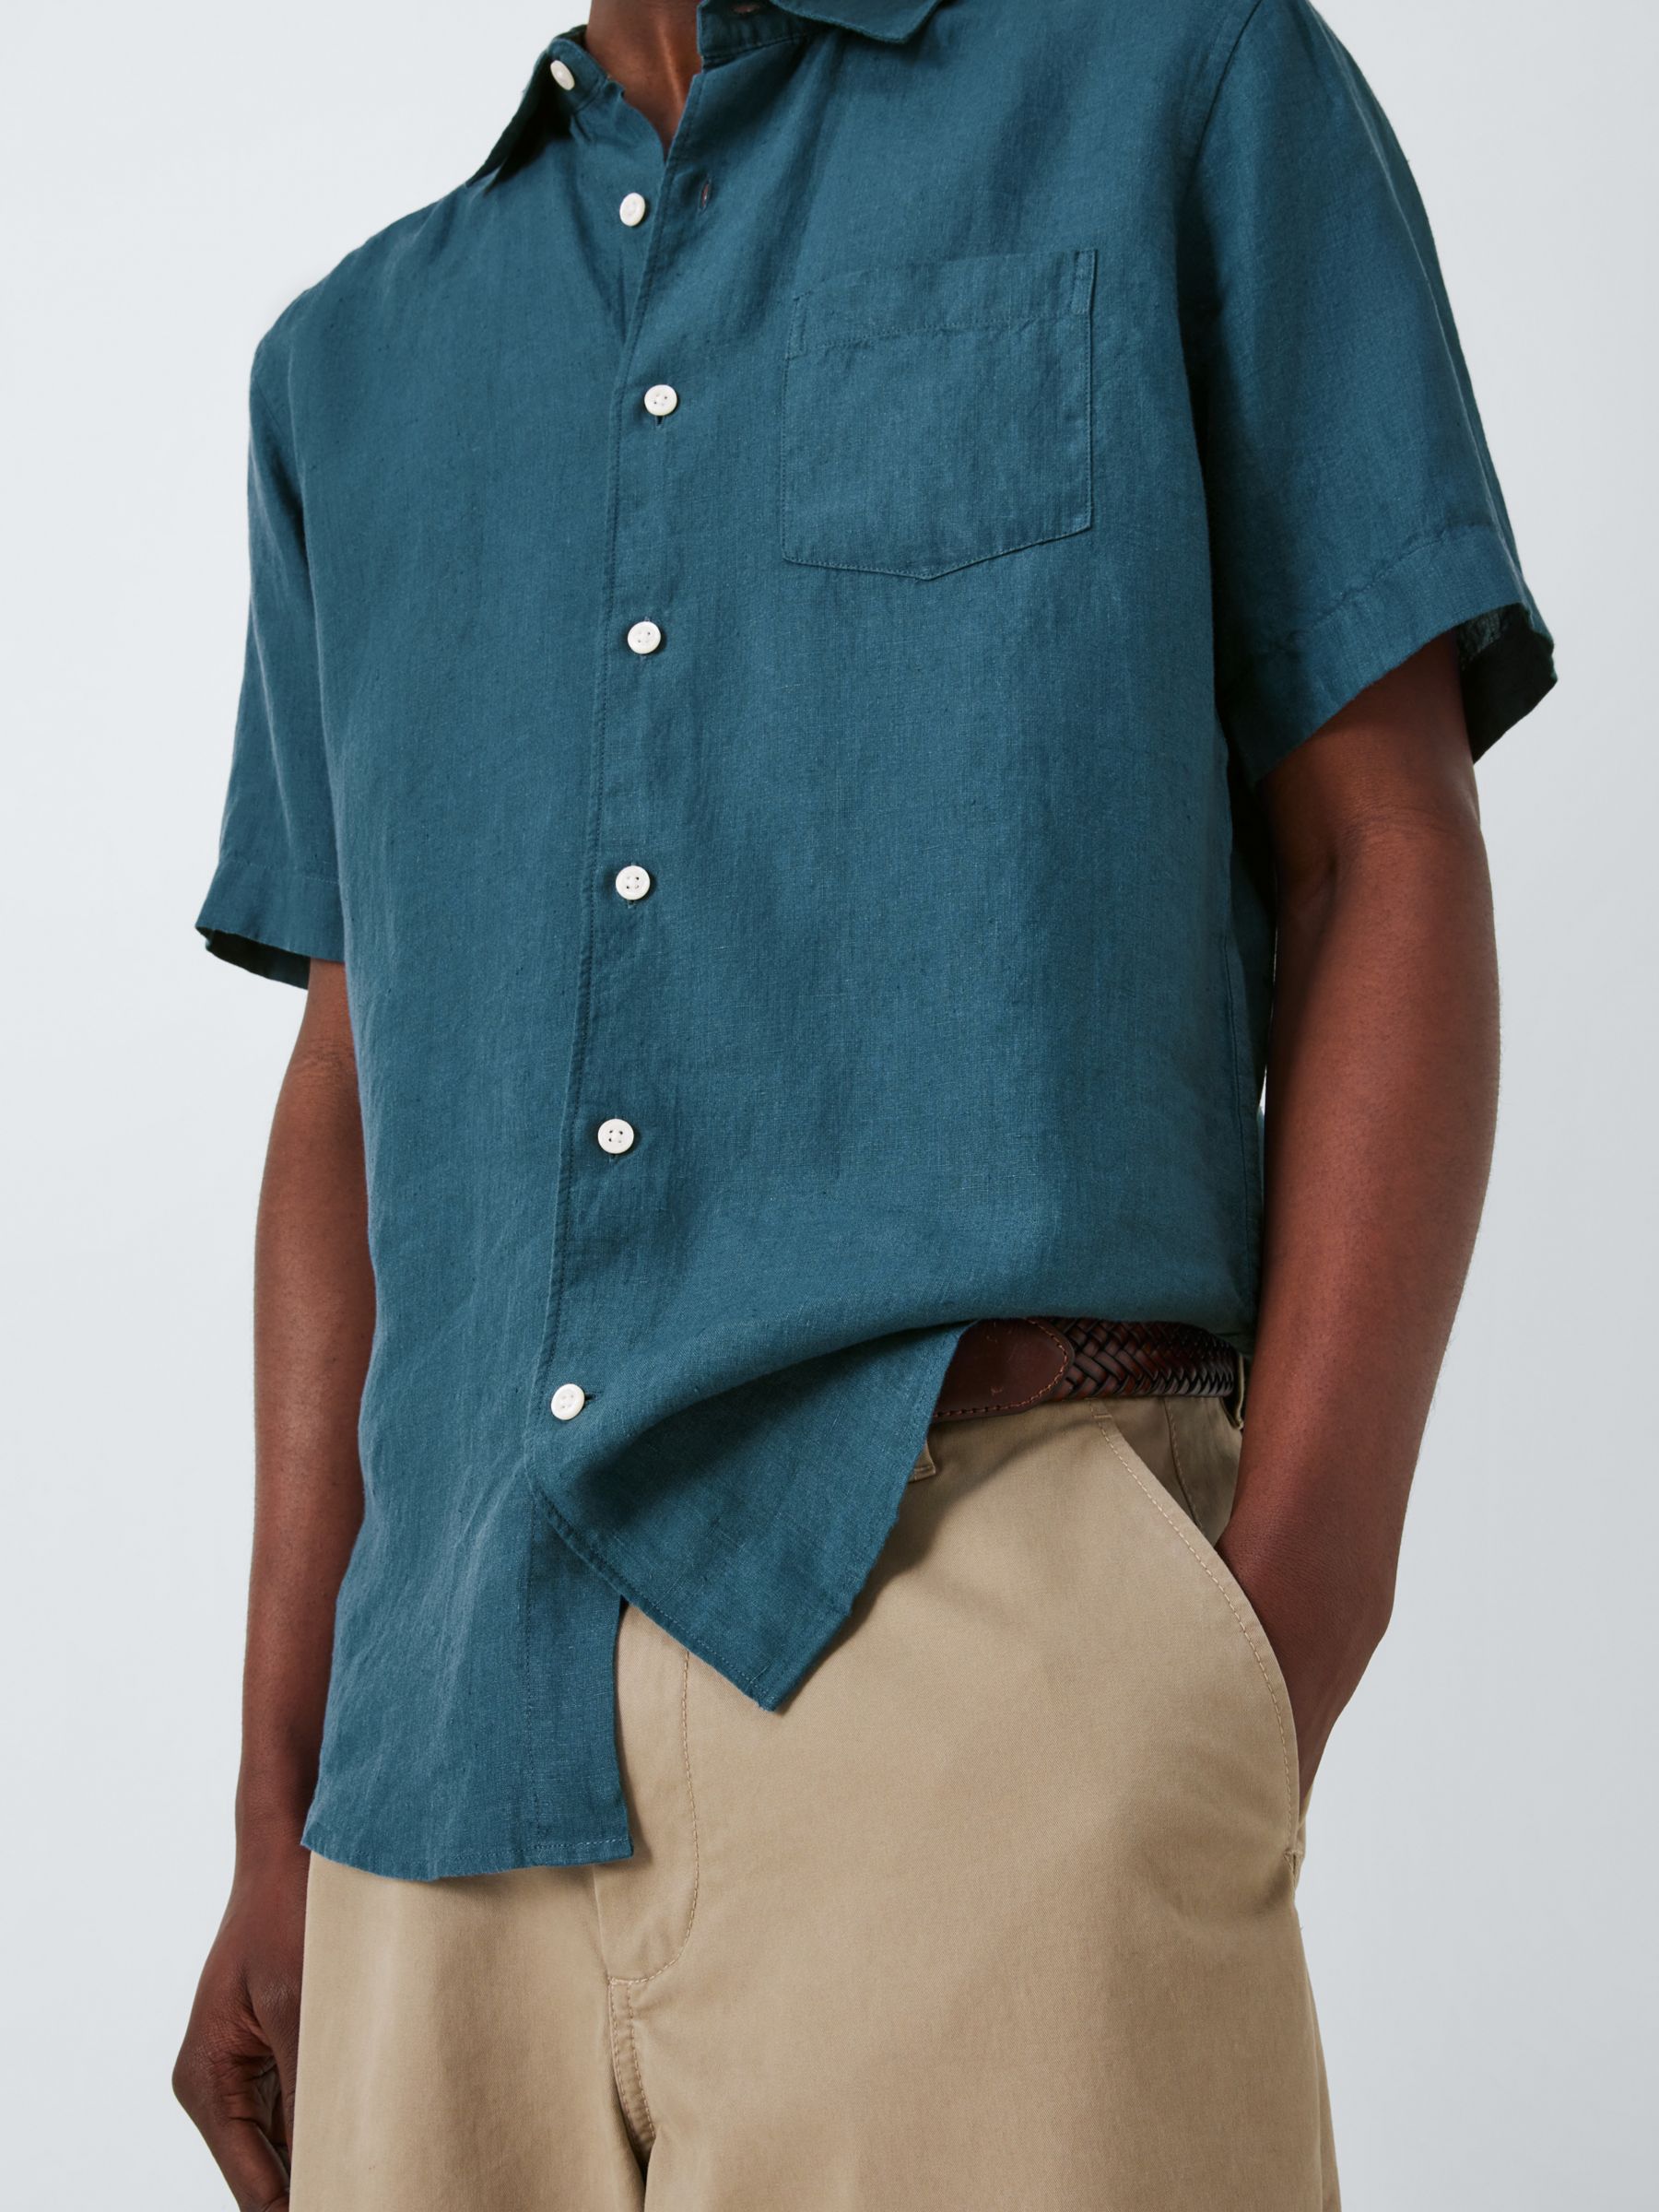 John Lewis Linen Short Sleeve Shirt, Mallard Blue, S